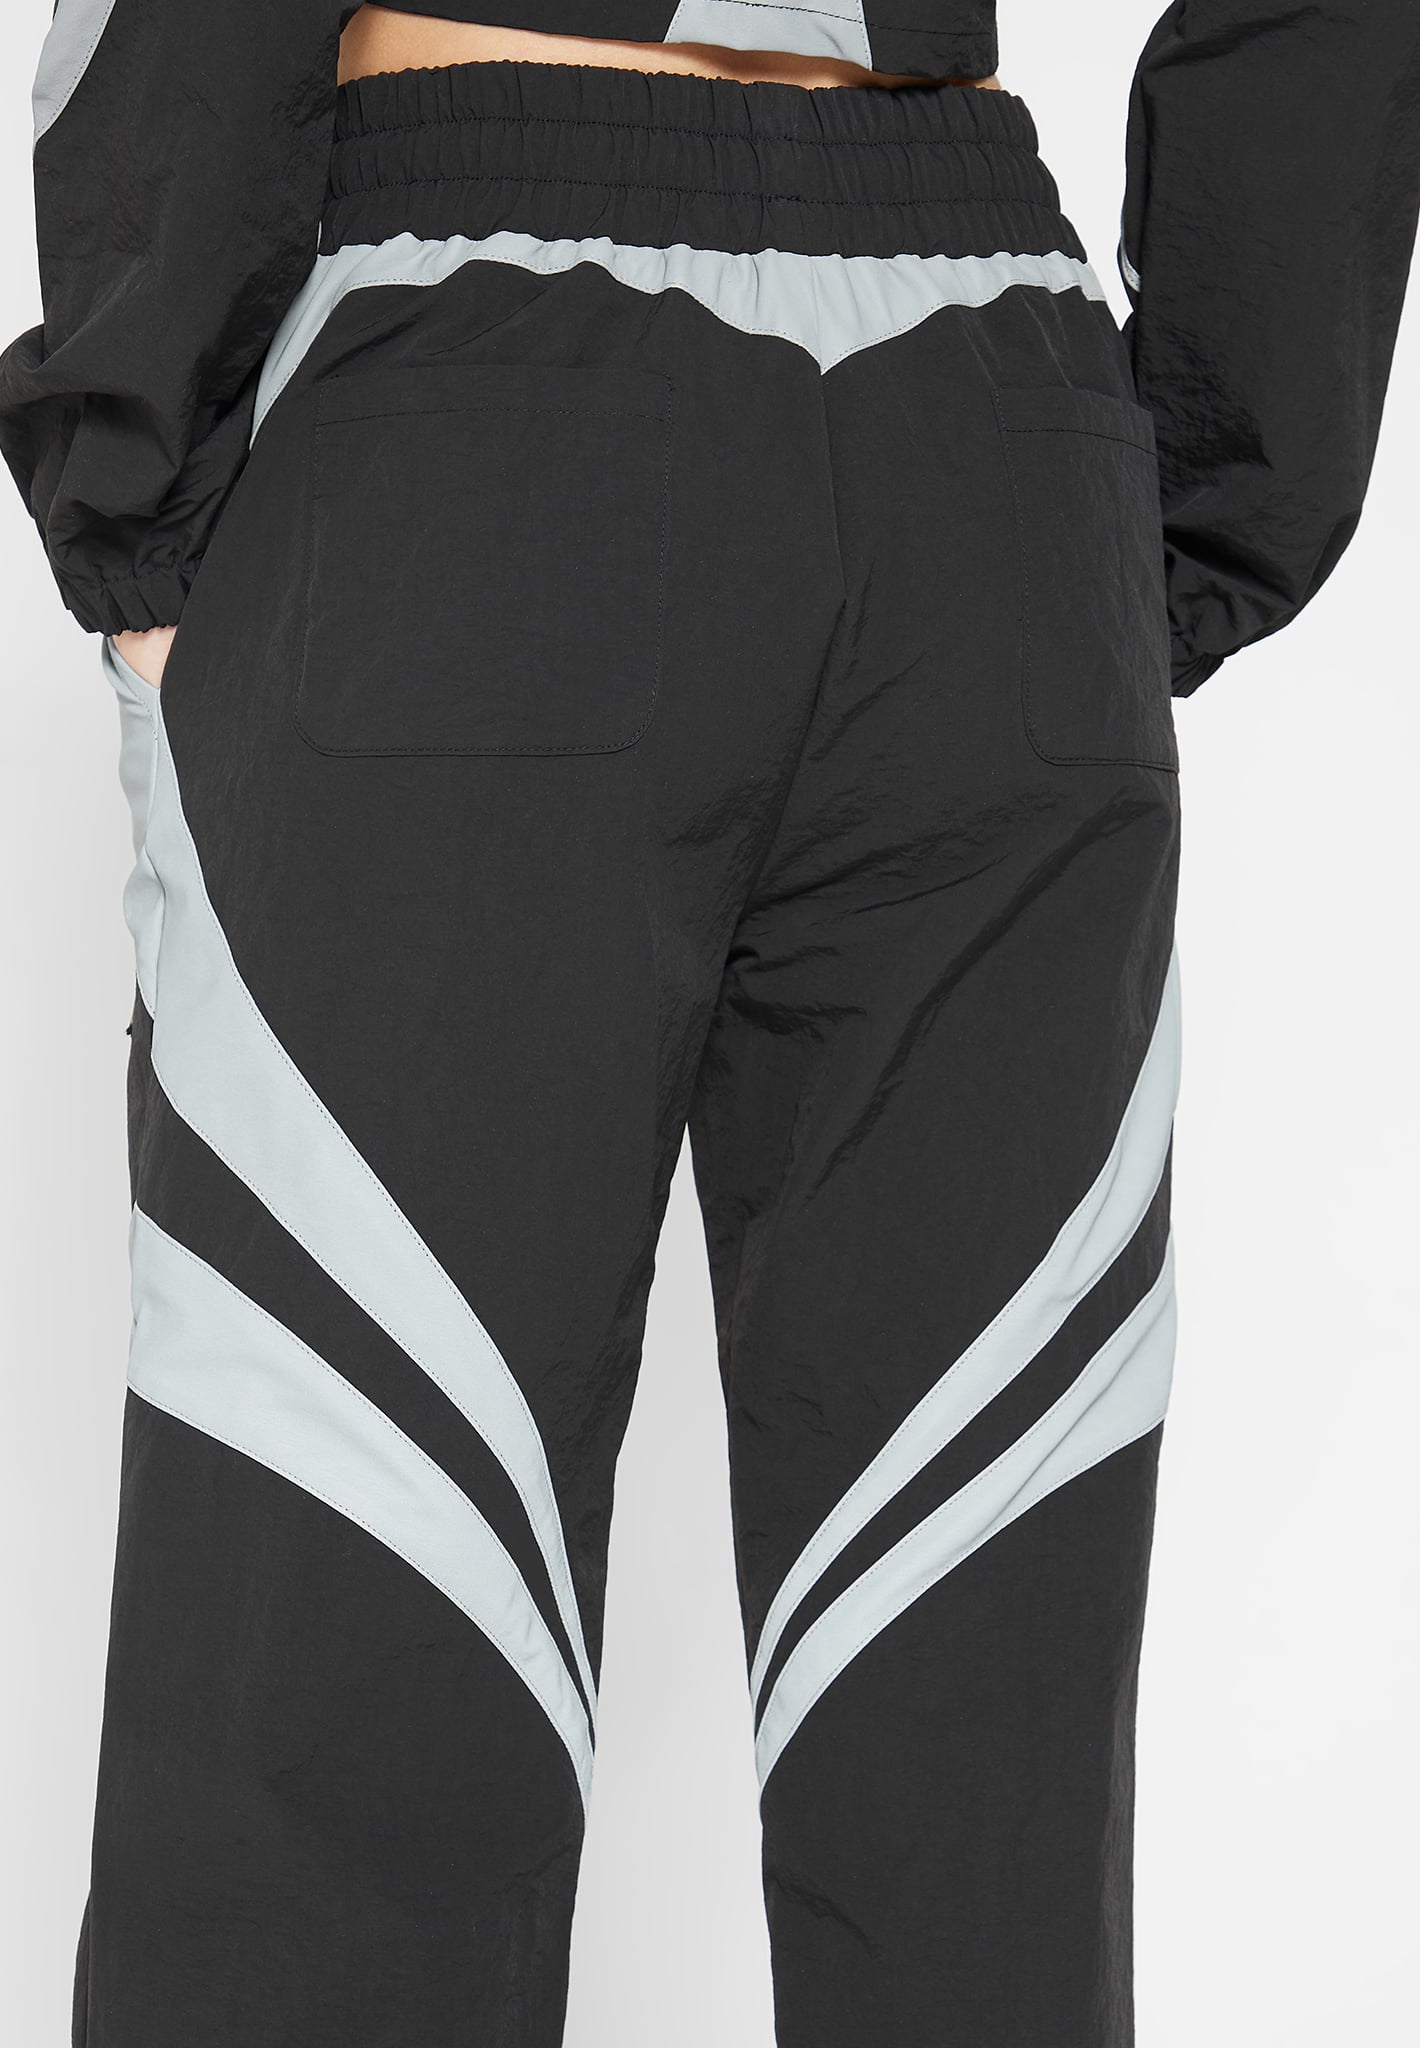 reflective-contour-track-pants-black